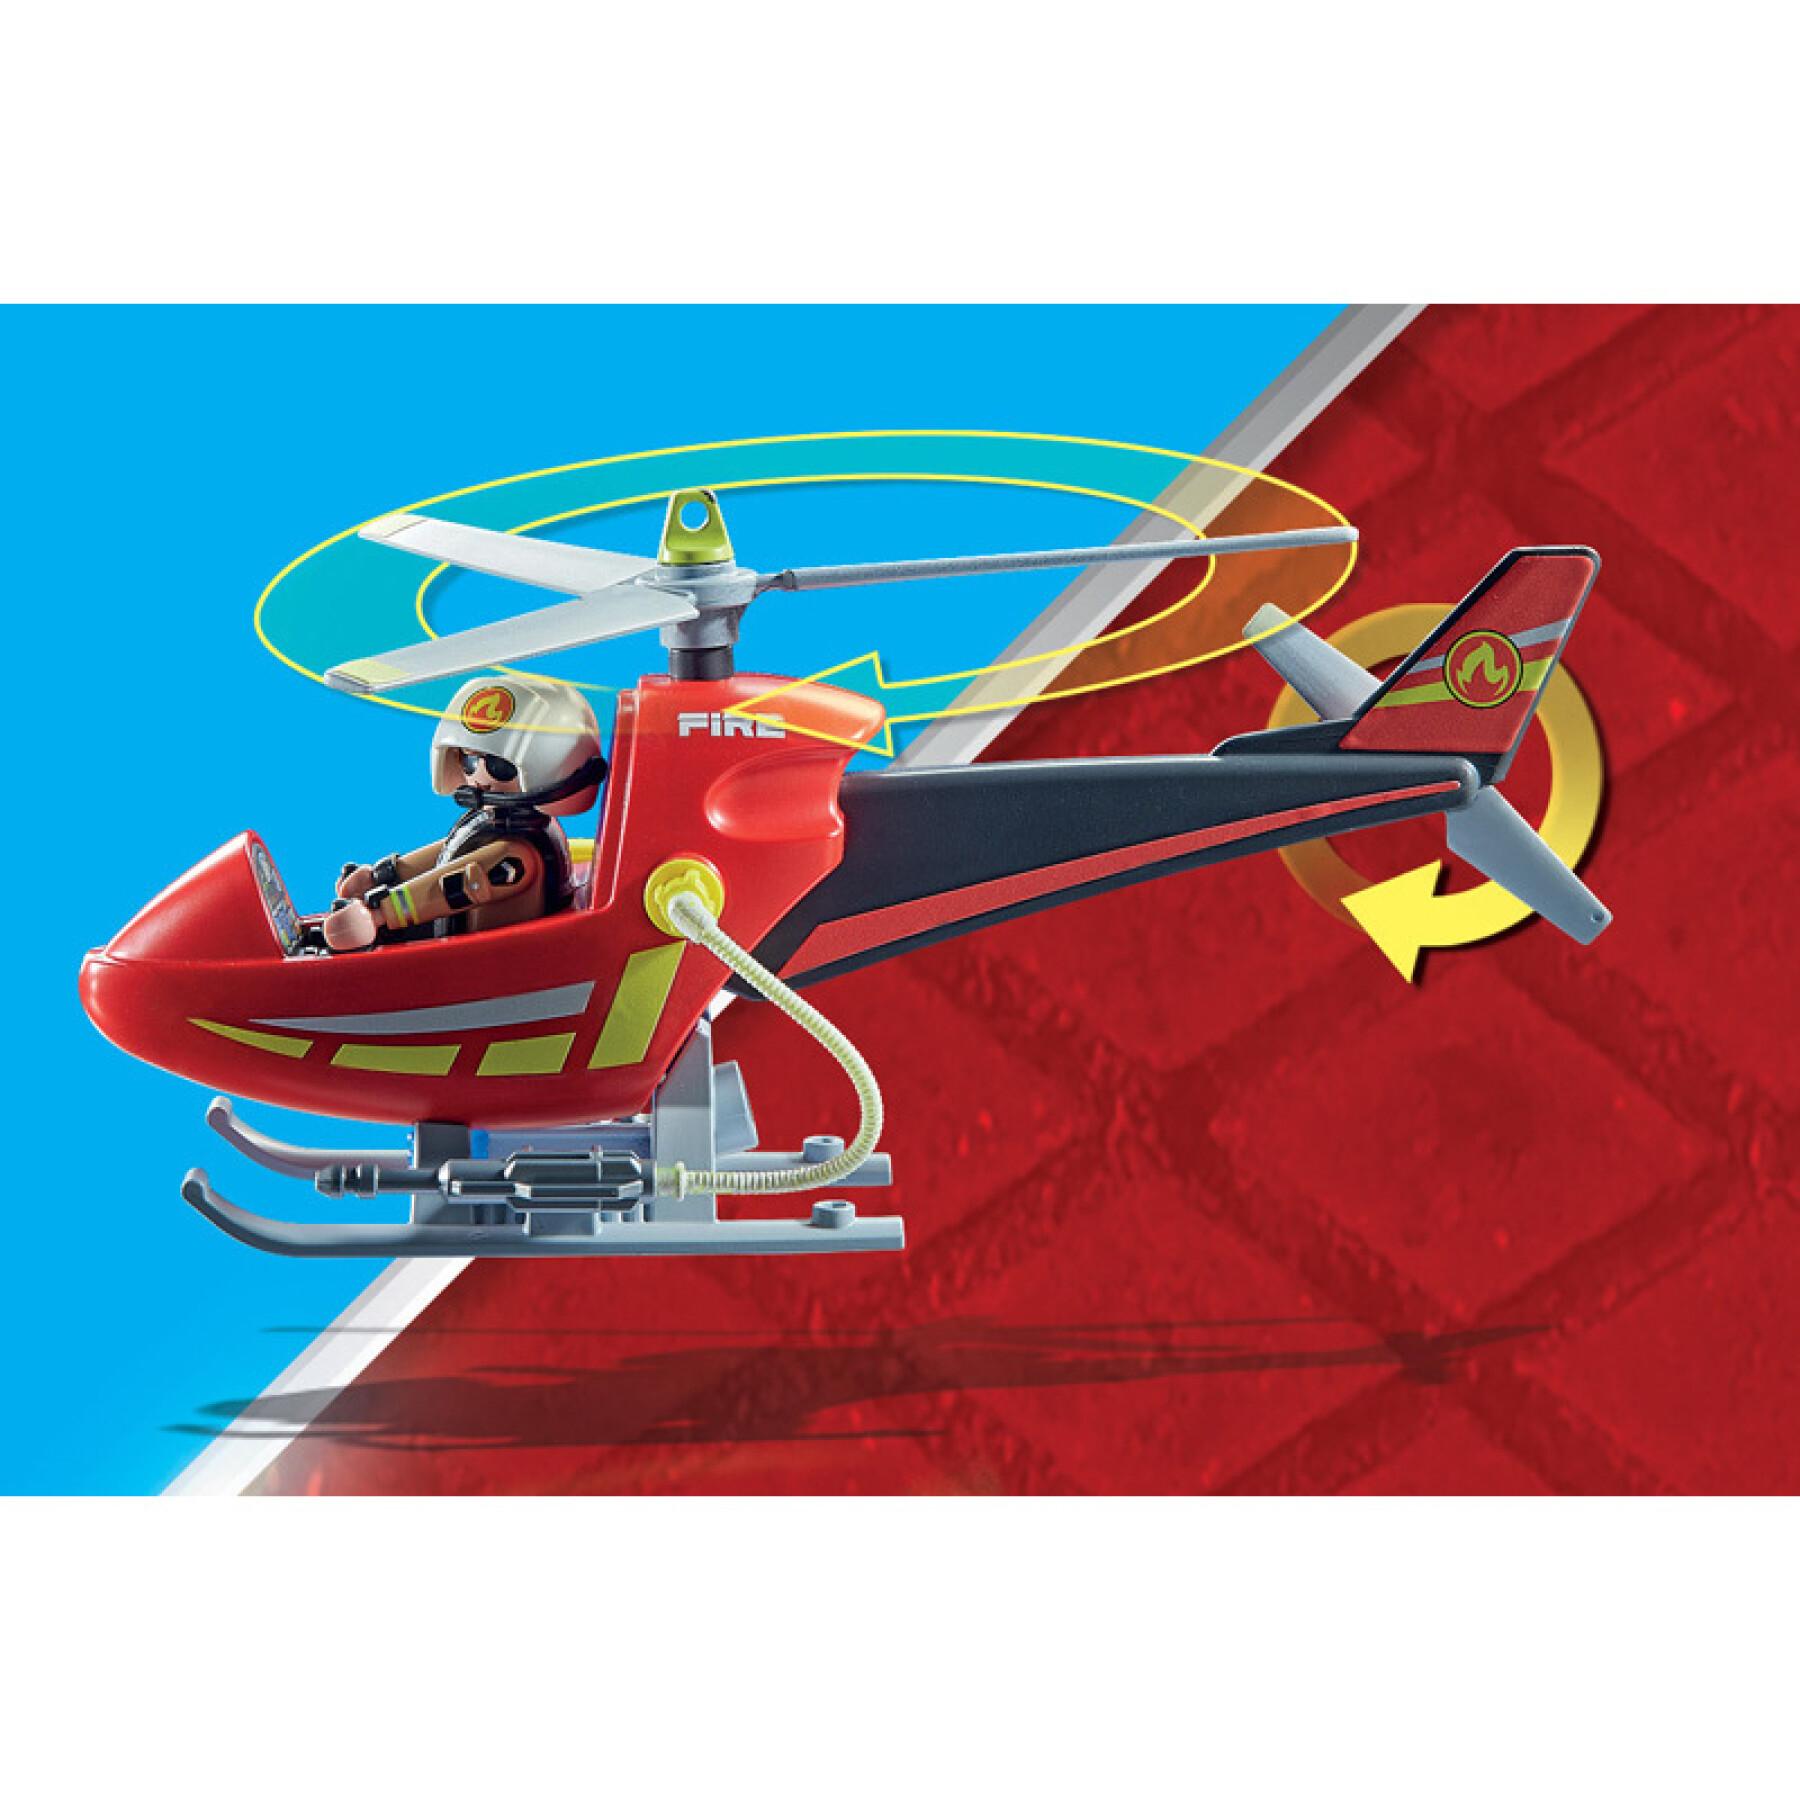 Juegos de acción con helicópteros de bomberos Playmobil